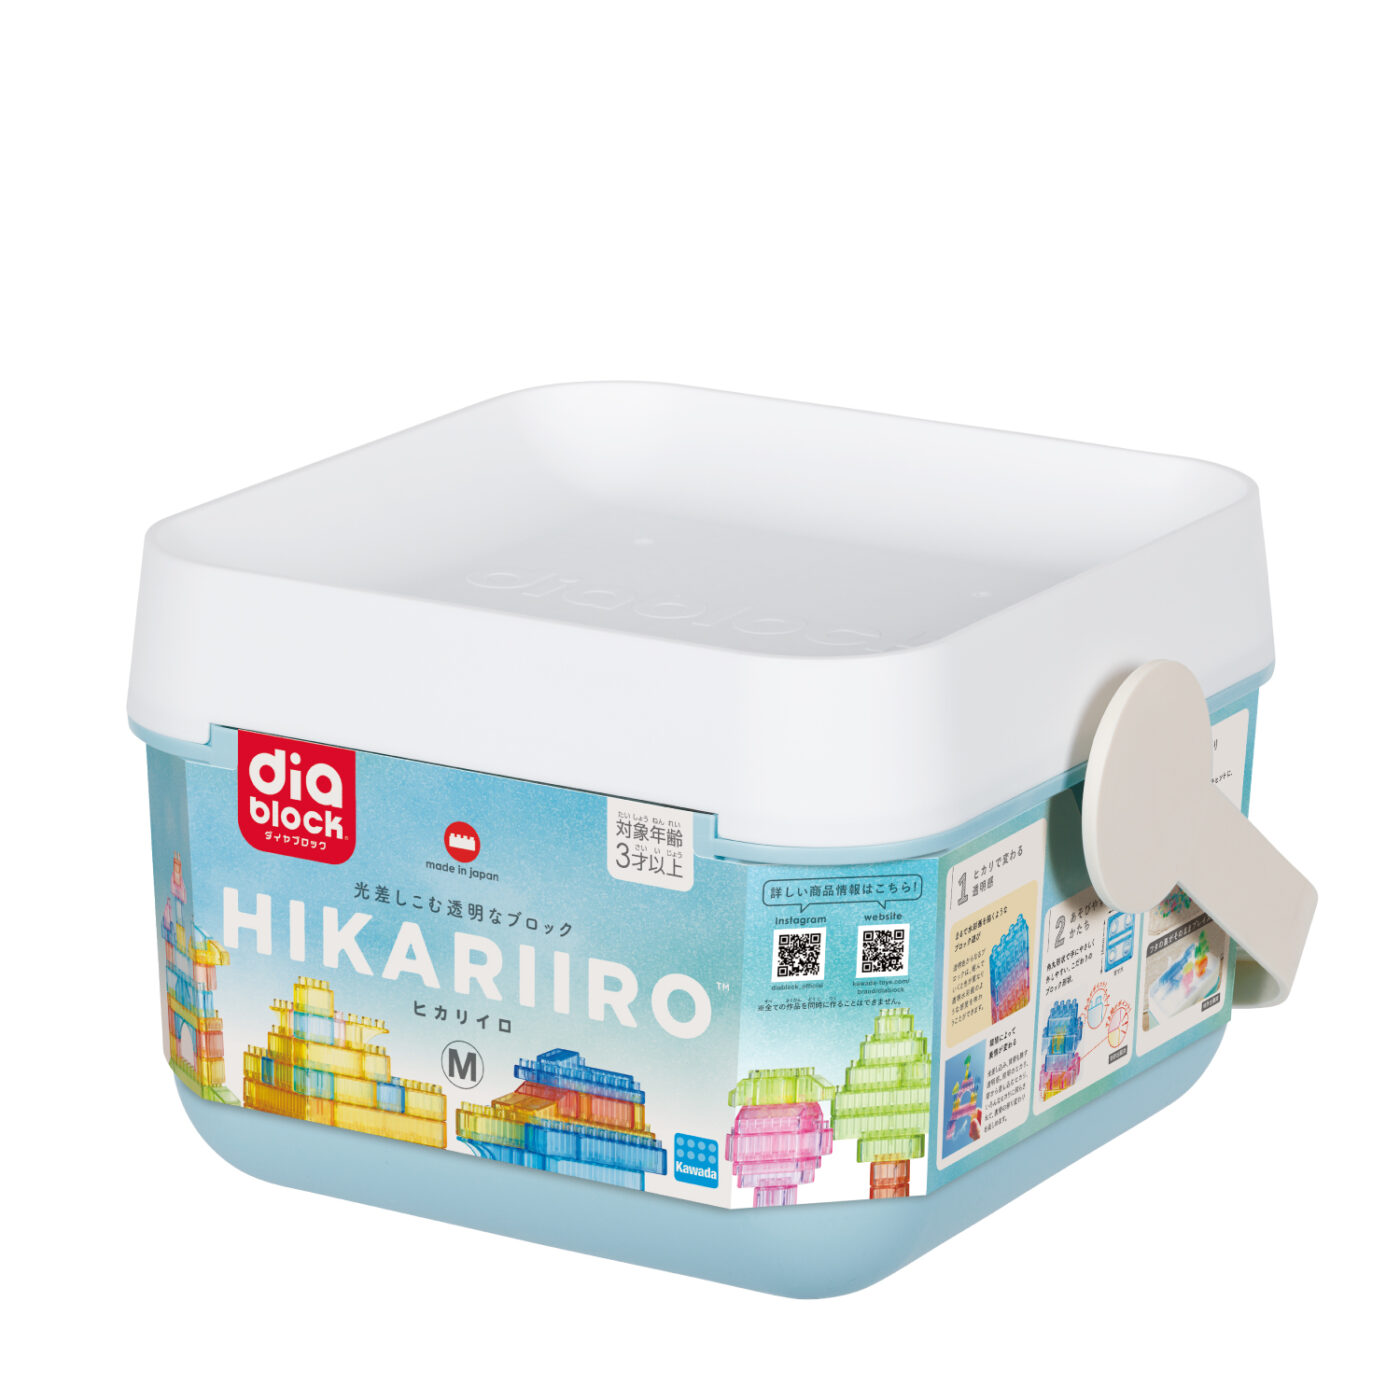 ダイヤブロック HIKARIIRO(ヒカリイロ) Mの商品画像